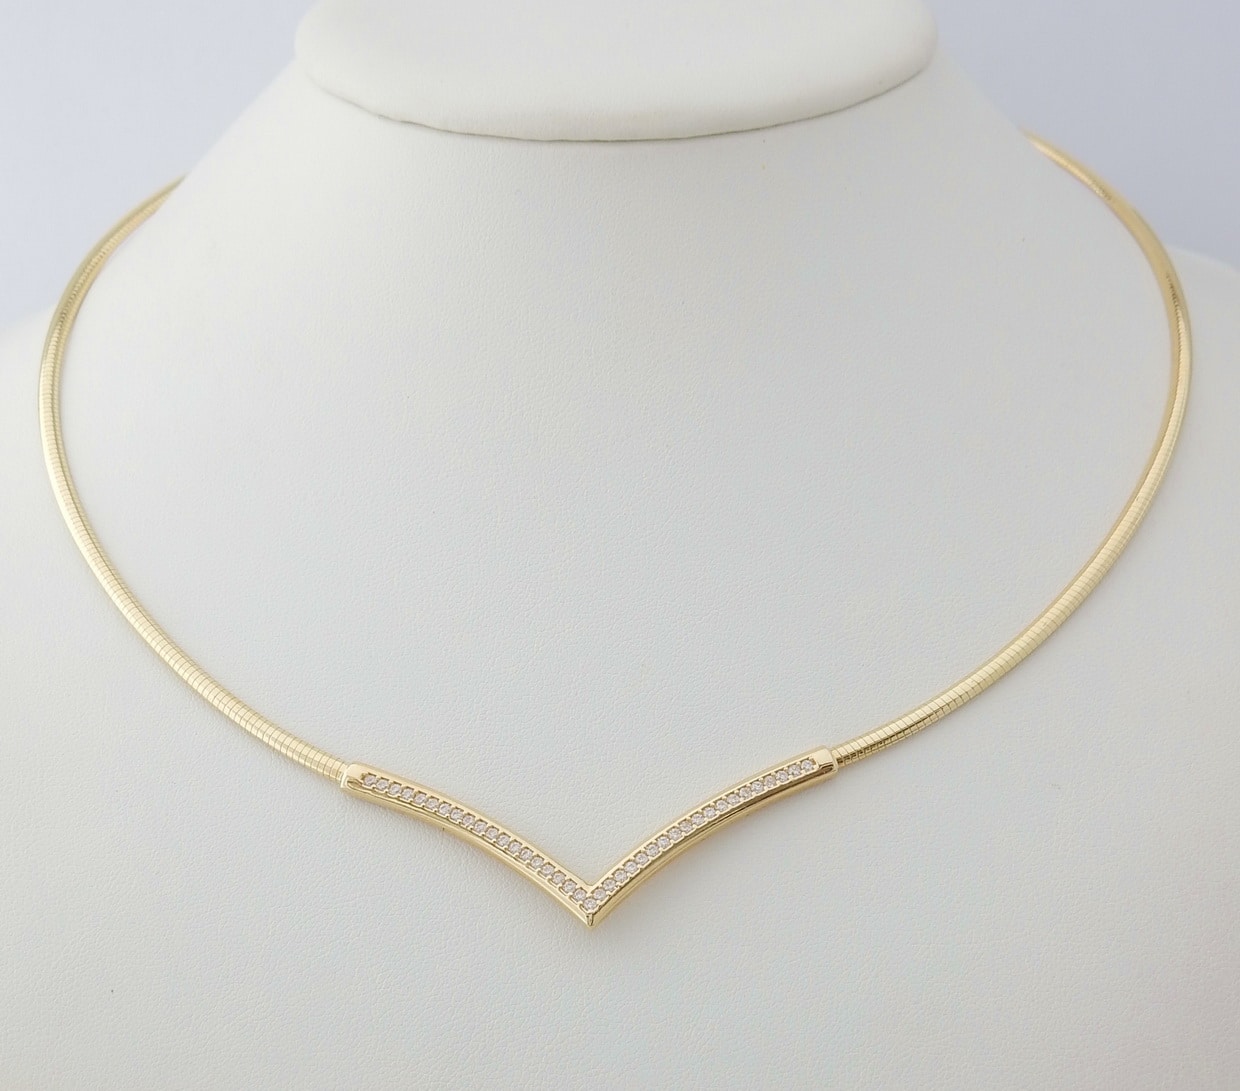 14 karaat Gouden Collier - Ketting met Witte Saffieren - Juwelenwereld